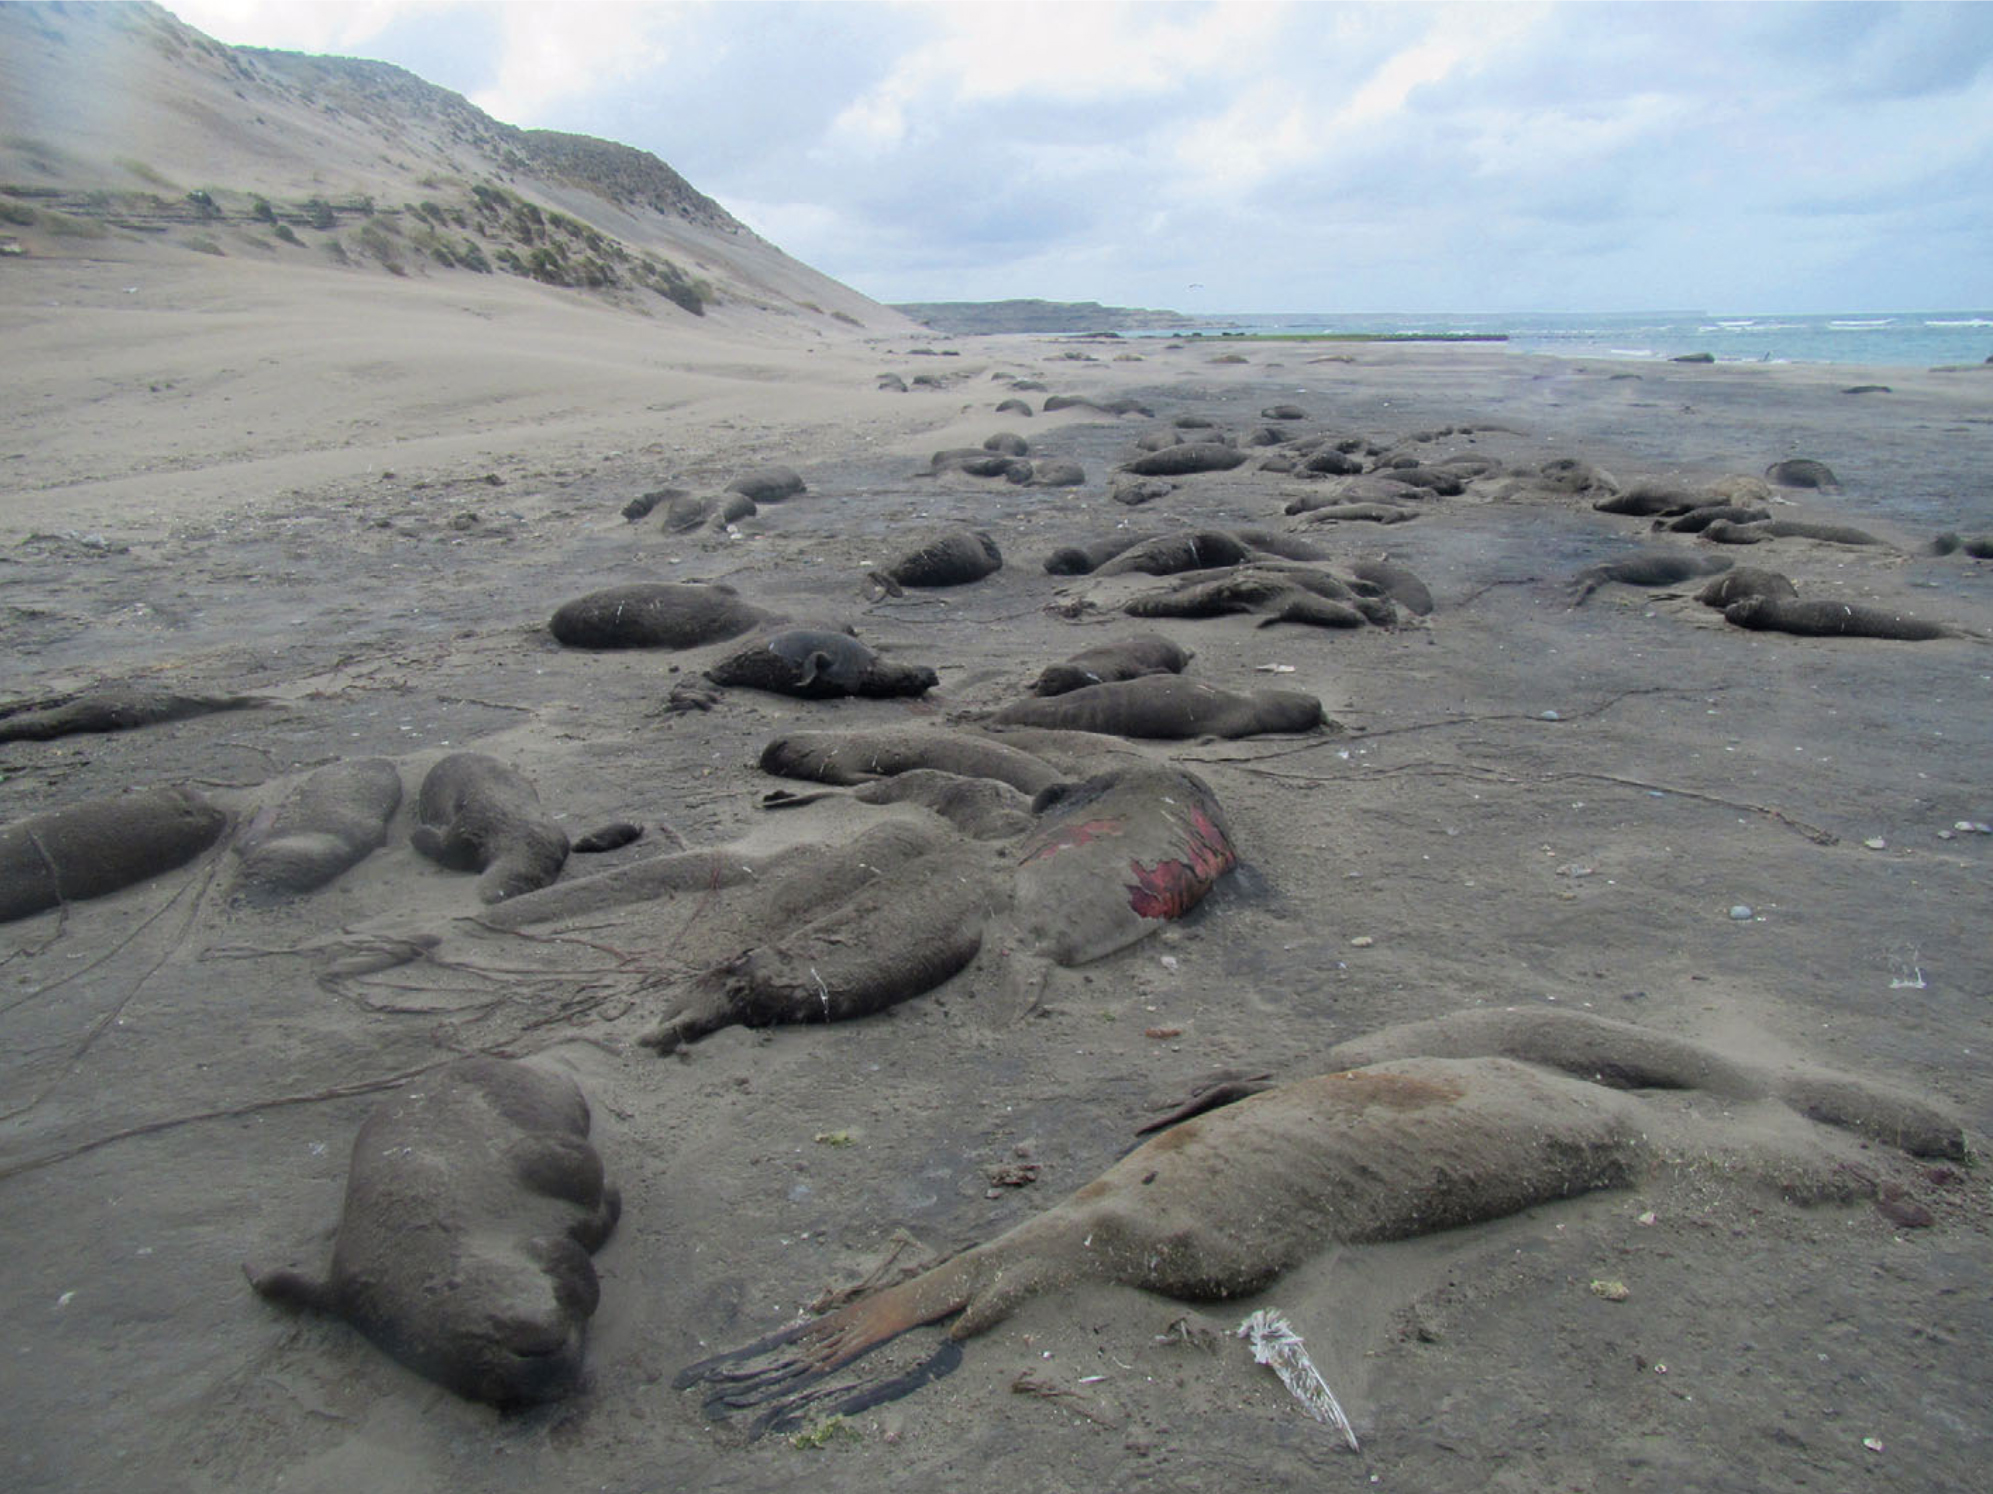 Dead elephant seals on beach.